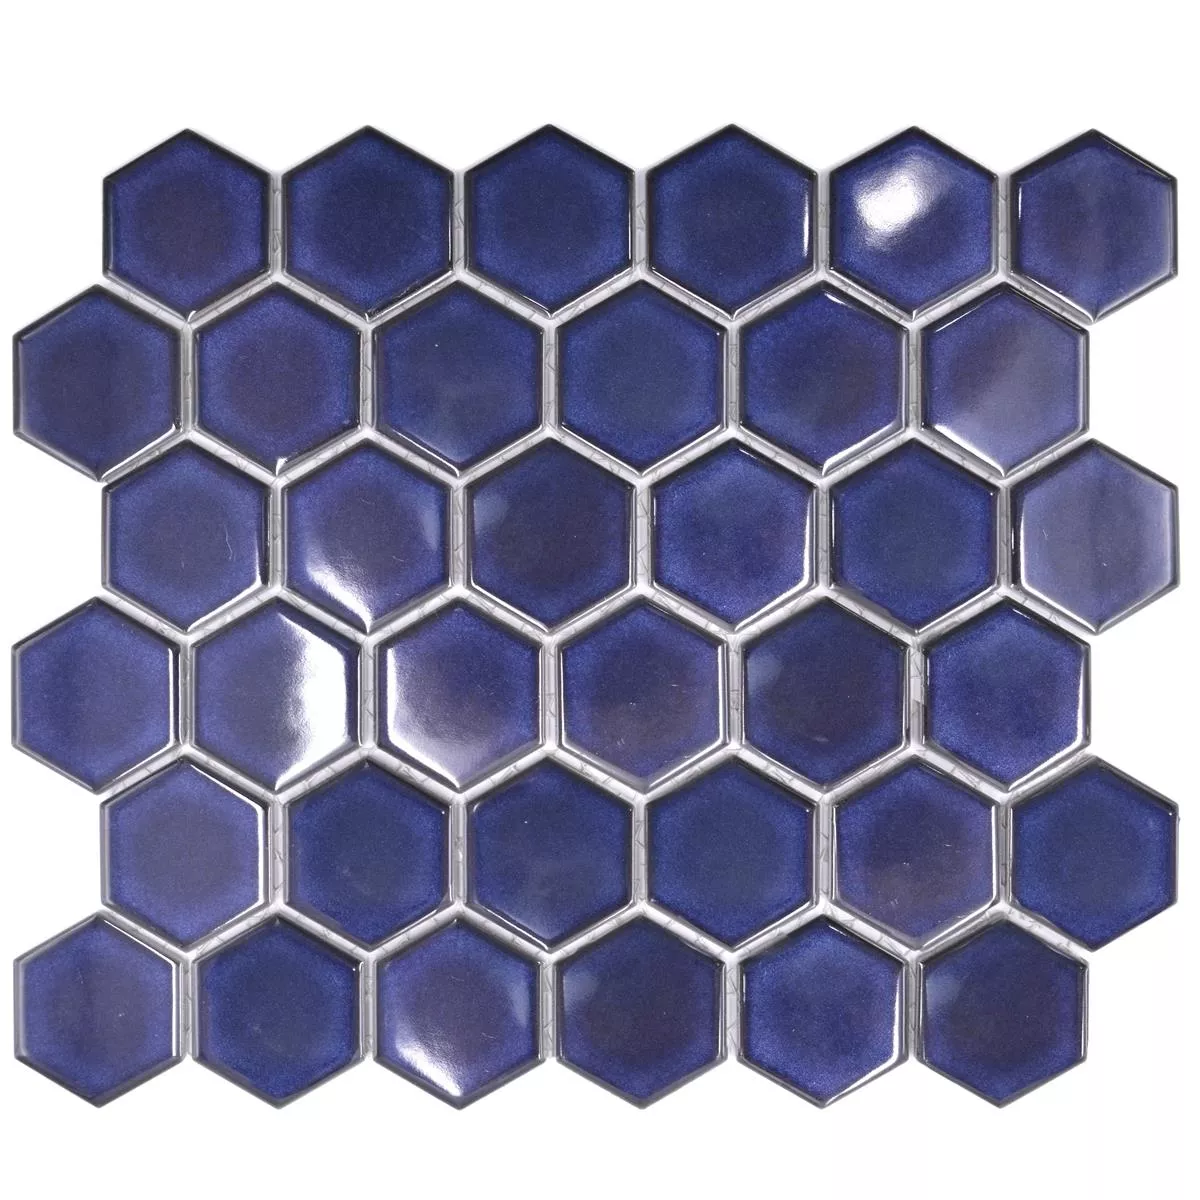 Minta tól től Kerámia Mozaik Salomon Hatszög Kobalt Kék H51